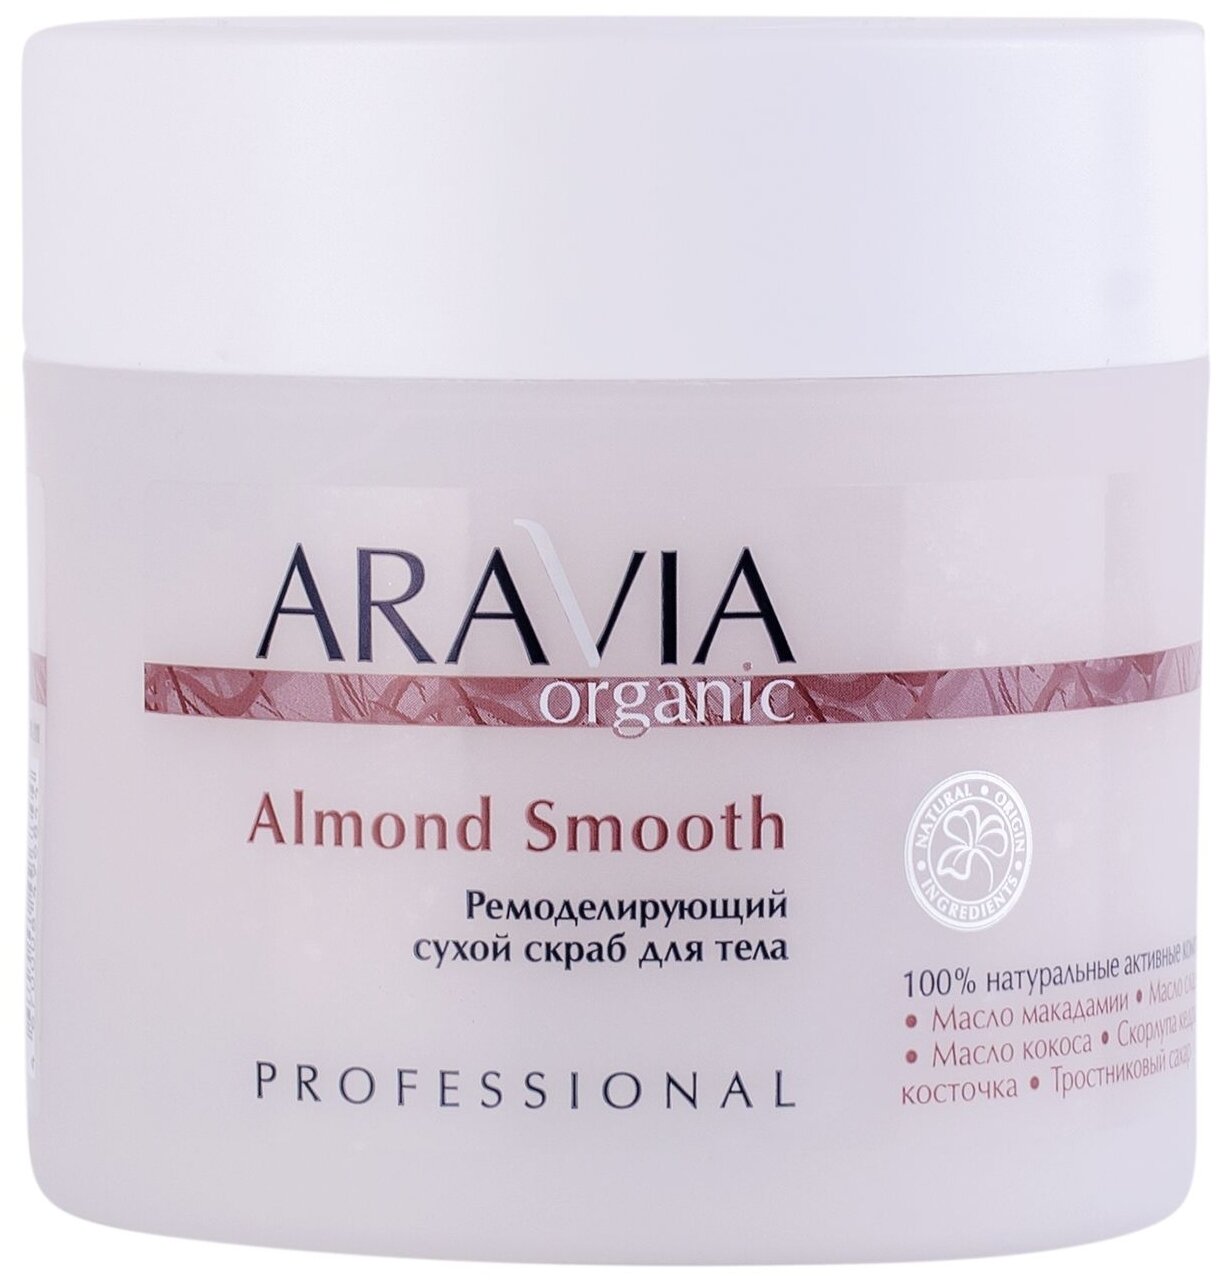 Ремоделирующий сухой скраб для тела ARAVIA Organic Almond Smooth, 300 г